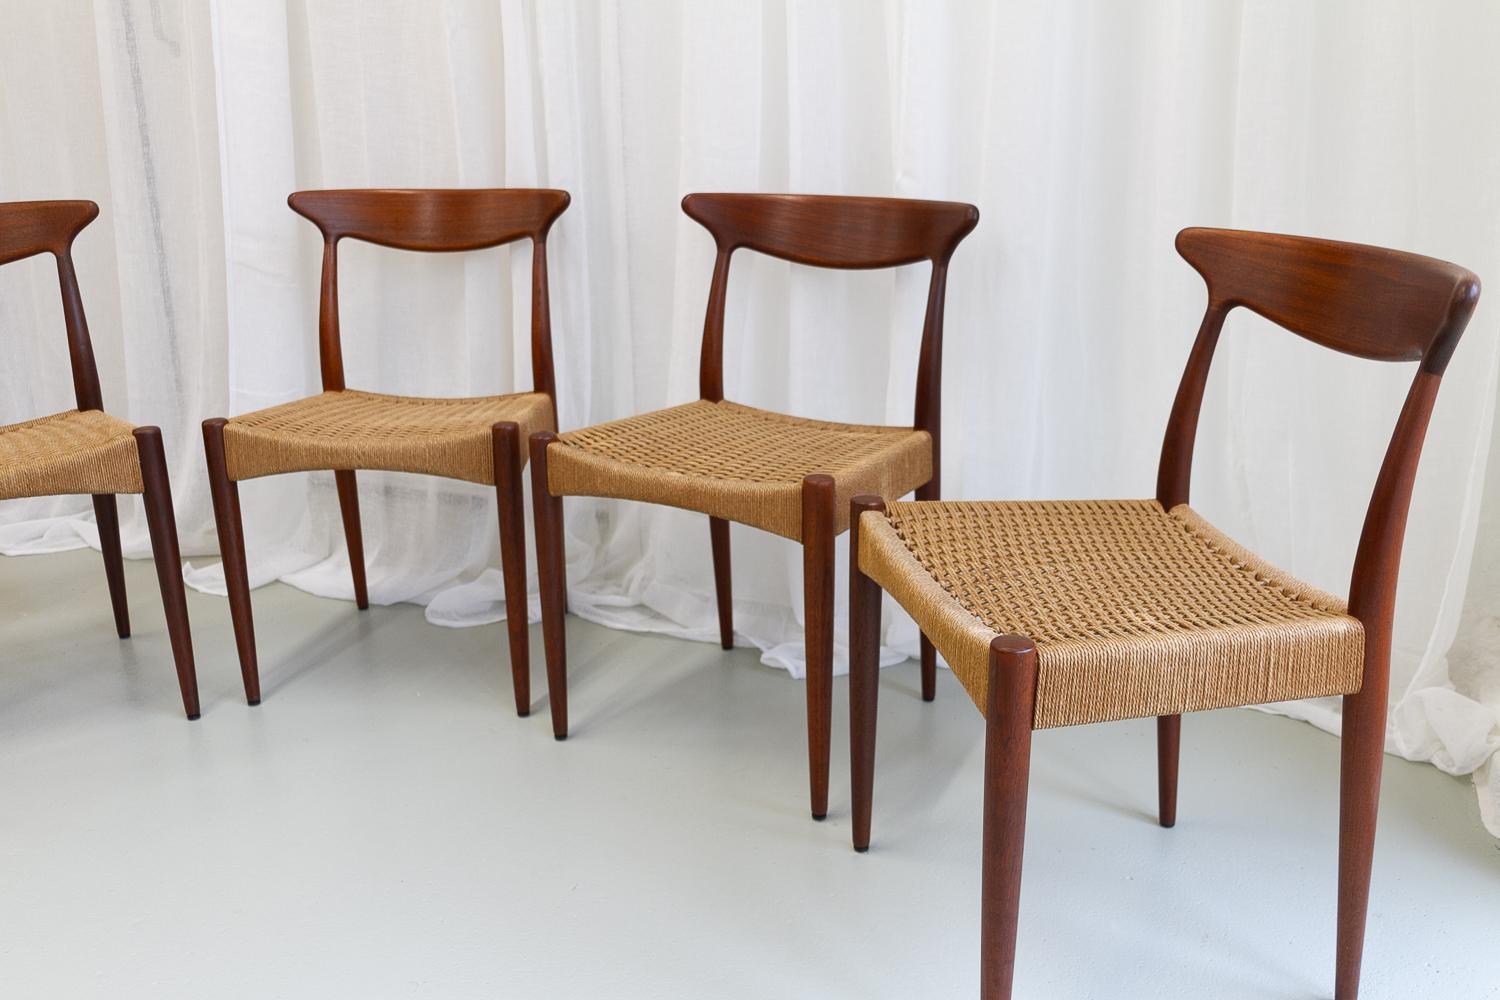 Mid-Century Modern Danish Modern Teak Chairs by Arne Hovmand-Olsen for Mogens Kold, 1950s. Set of 4 For Sale